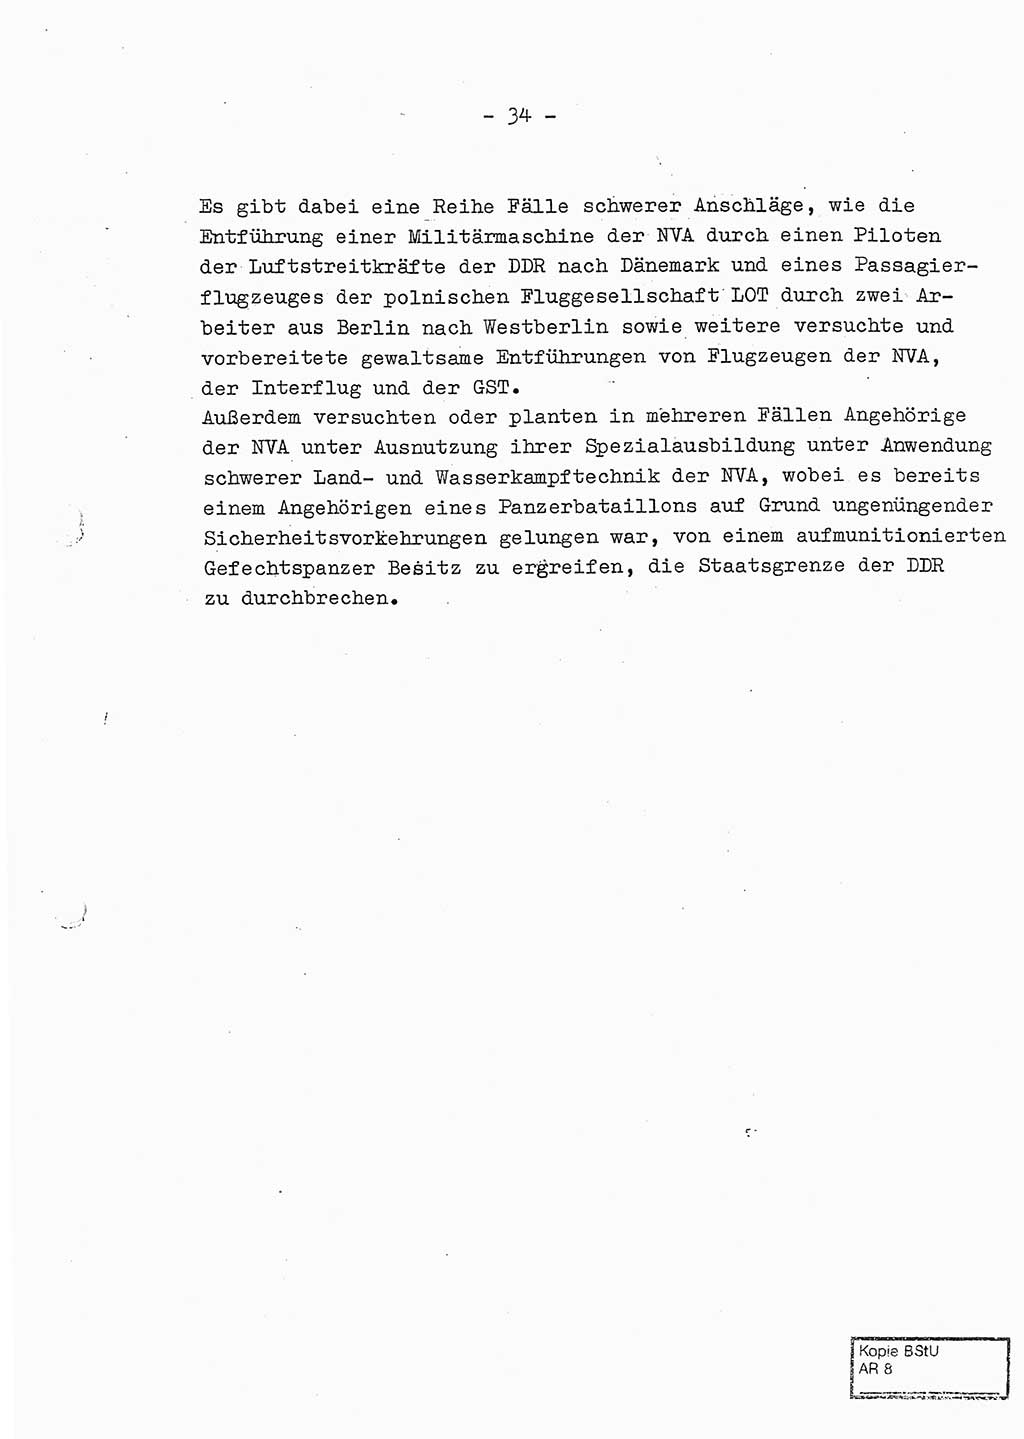 Jahresbericht der Hauptabteilung (HA) Ⅸ 1969 des Ministeriums für Staatssicherheit (MfS) der Deutschen Demokratischen Republik (DDR), Berlin 1970, Seite 34 (J.-Ber. MfS DDR HA Ⅸ /69 1970, S. 34)